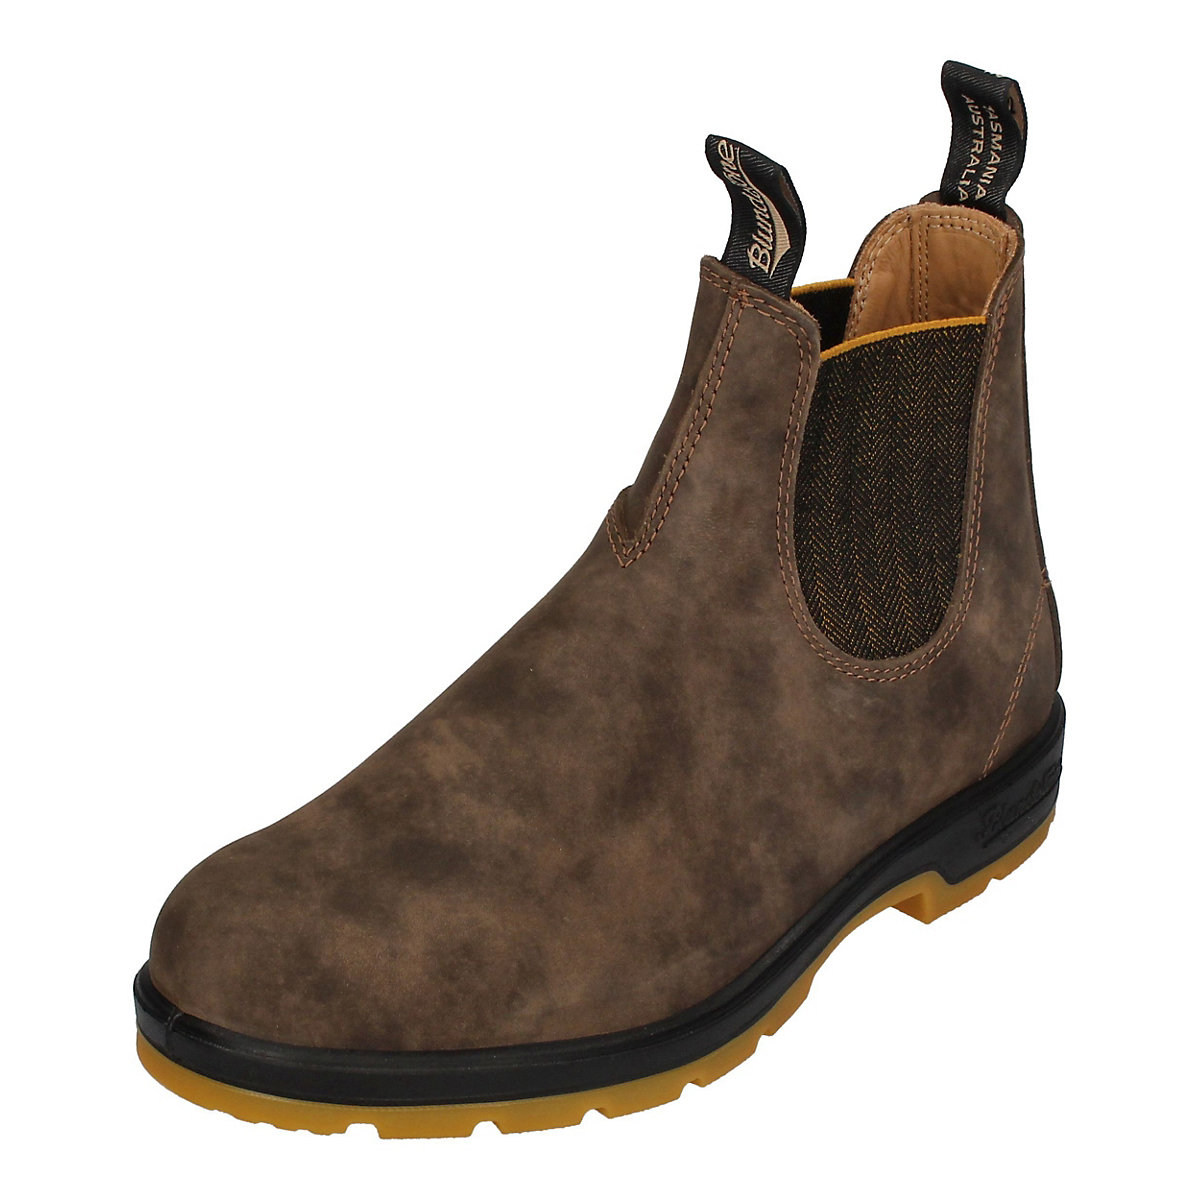 Blundstone Stiefel Boots #1944 Leather (550 Series) Rustic Brown | Weite Größe braun